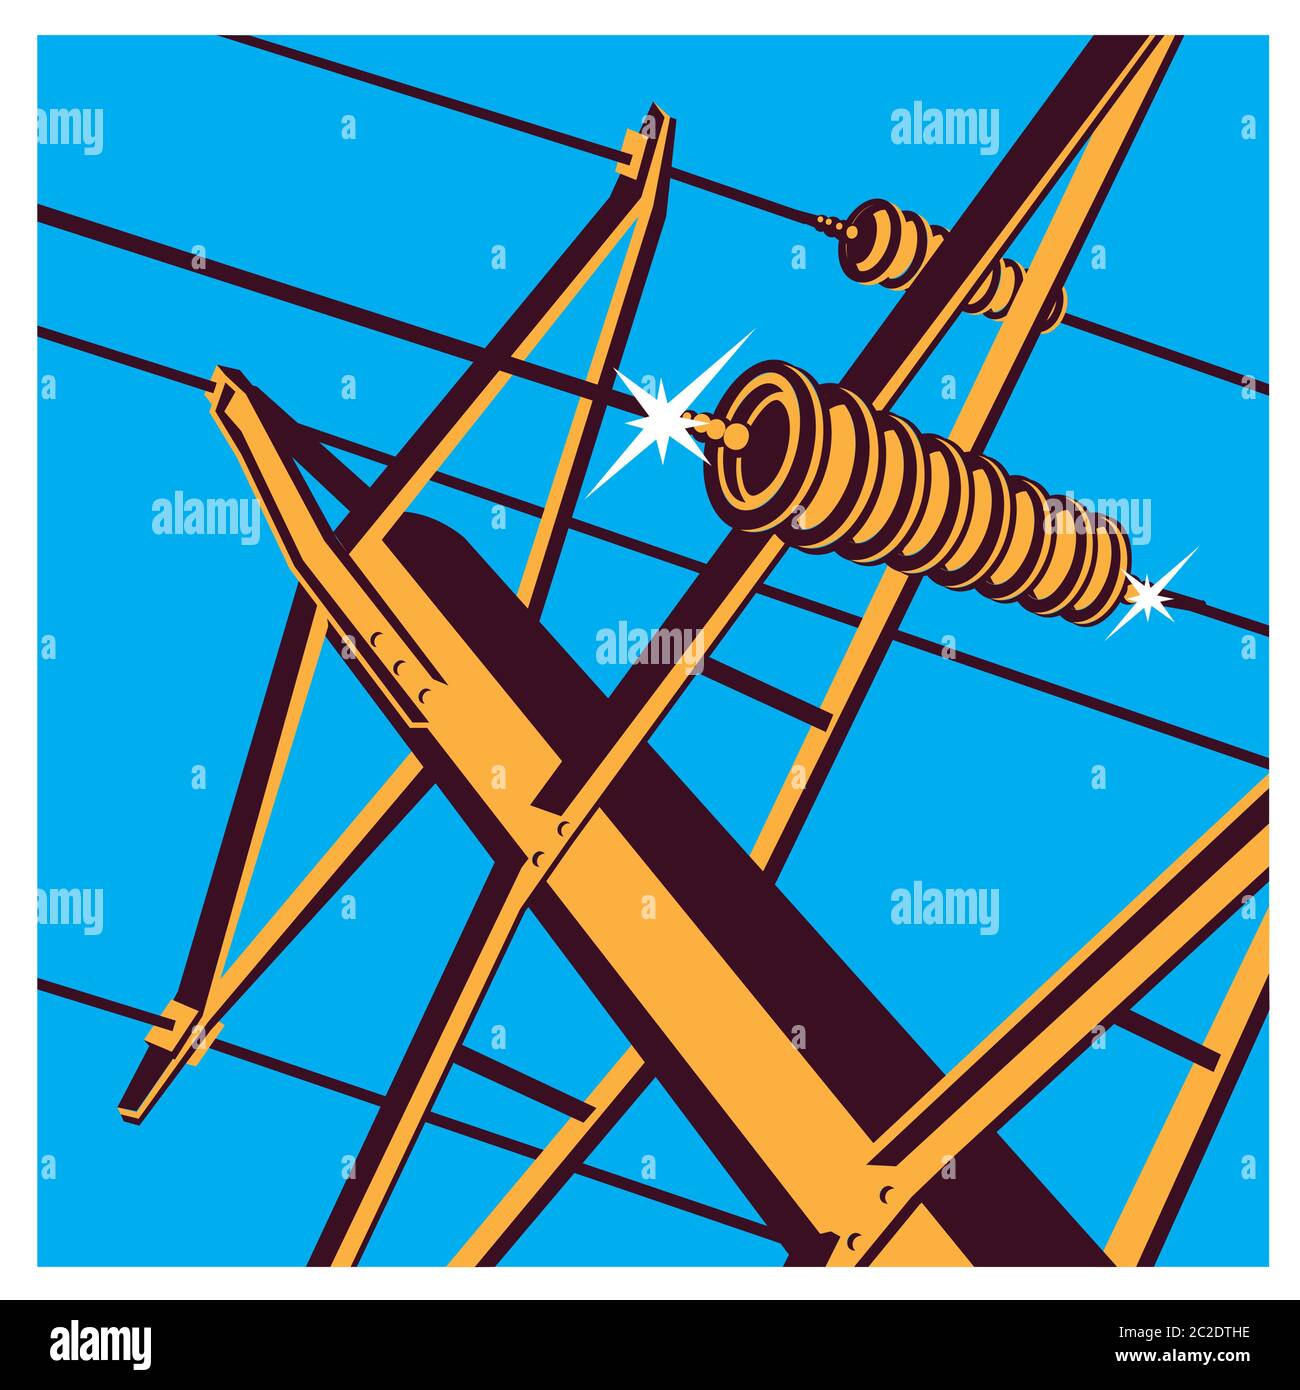 Illustrazione vettoriale stilizzata sul tema delle linee elettriche ad alta tensione, industriali, simboli del settore energetico Illustrazione Vettoriale